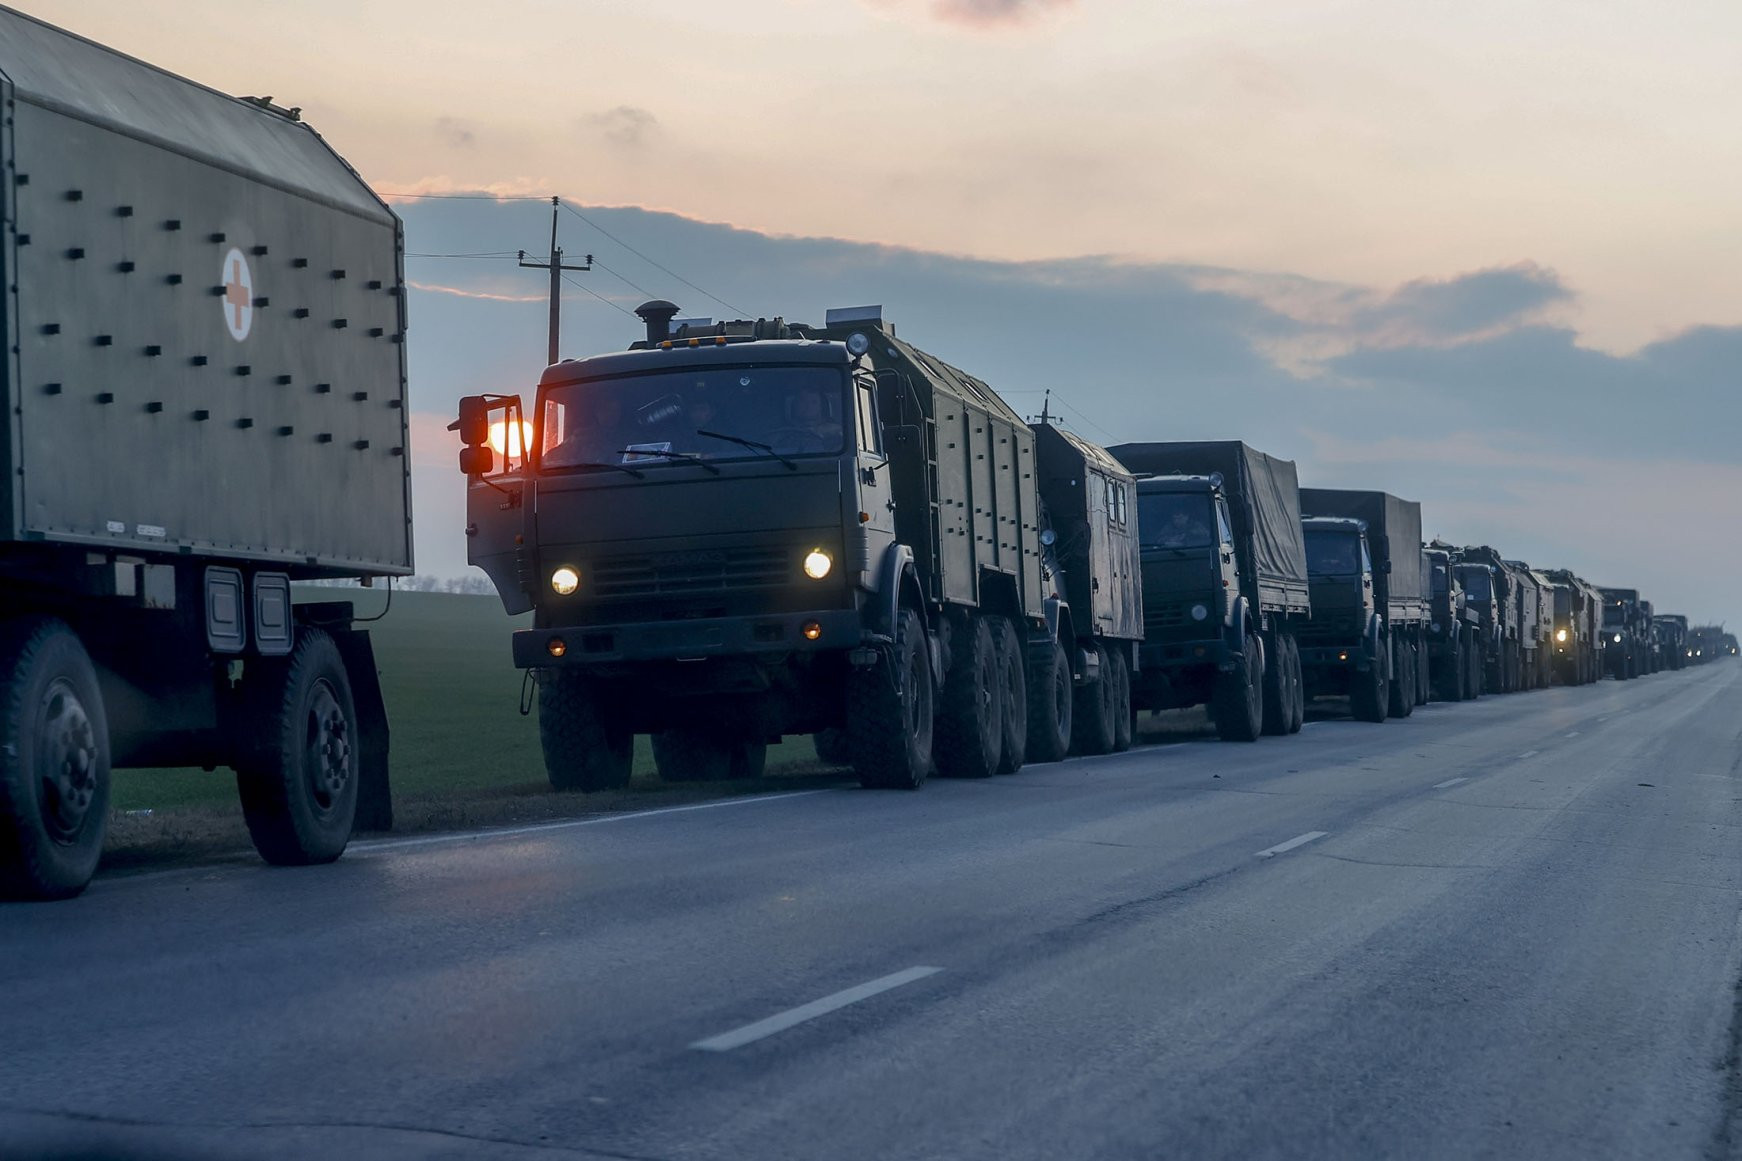 Đoàn xe quân sự của Nga đang tiến về biên giới vào vùng Donbass, miền đông Ukraine, ở thành phố biên giới Rostov của Nga. Ảnh: Daily Sabah.